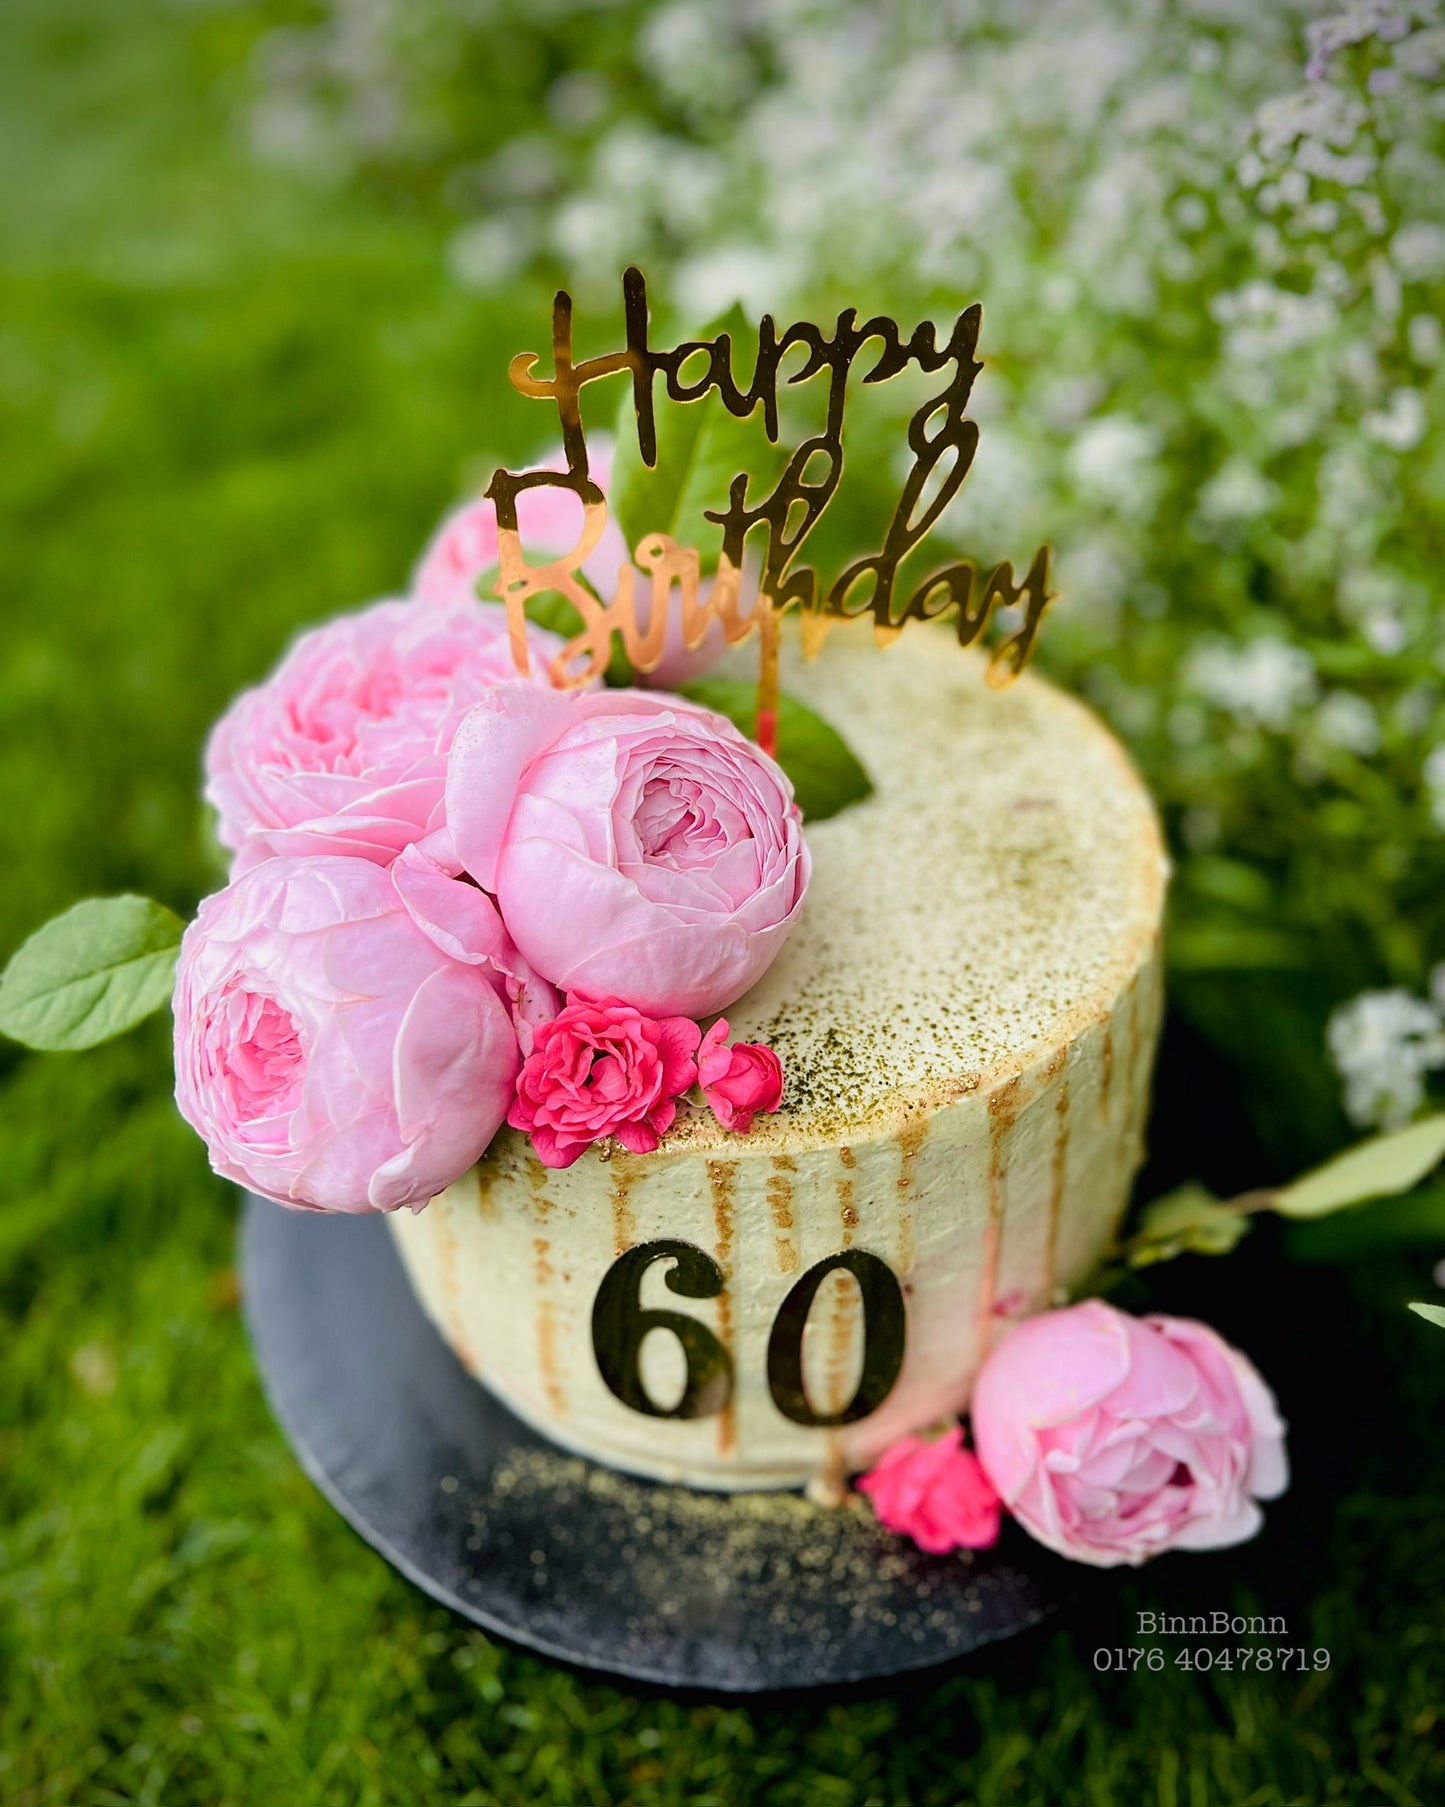 4. Torte "Spirit" zum Geburtstag mit frischen Rosen, Früchten und Matcha 22 cm